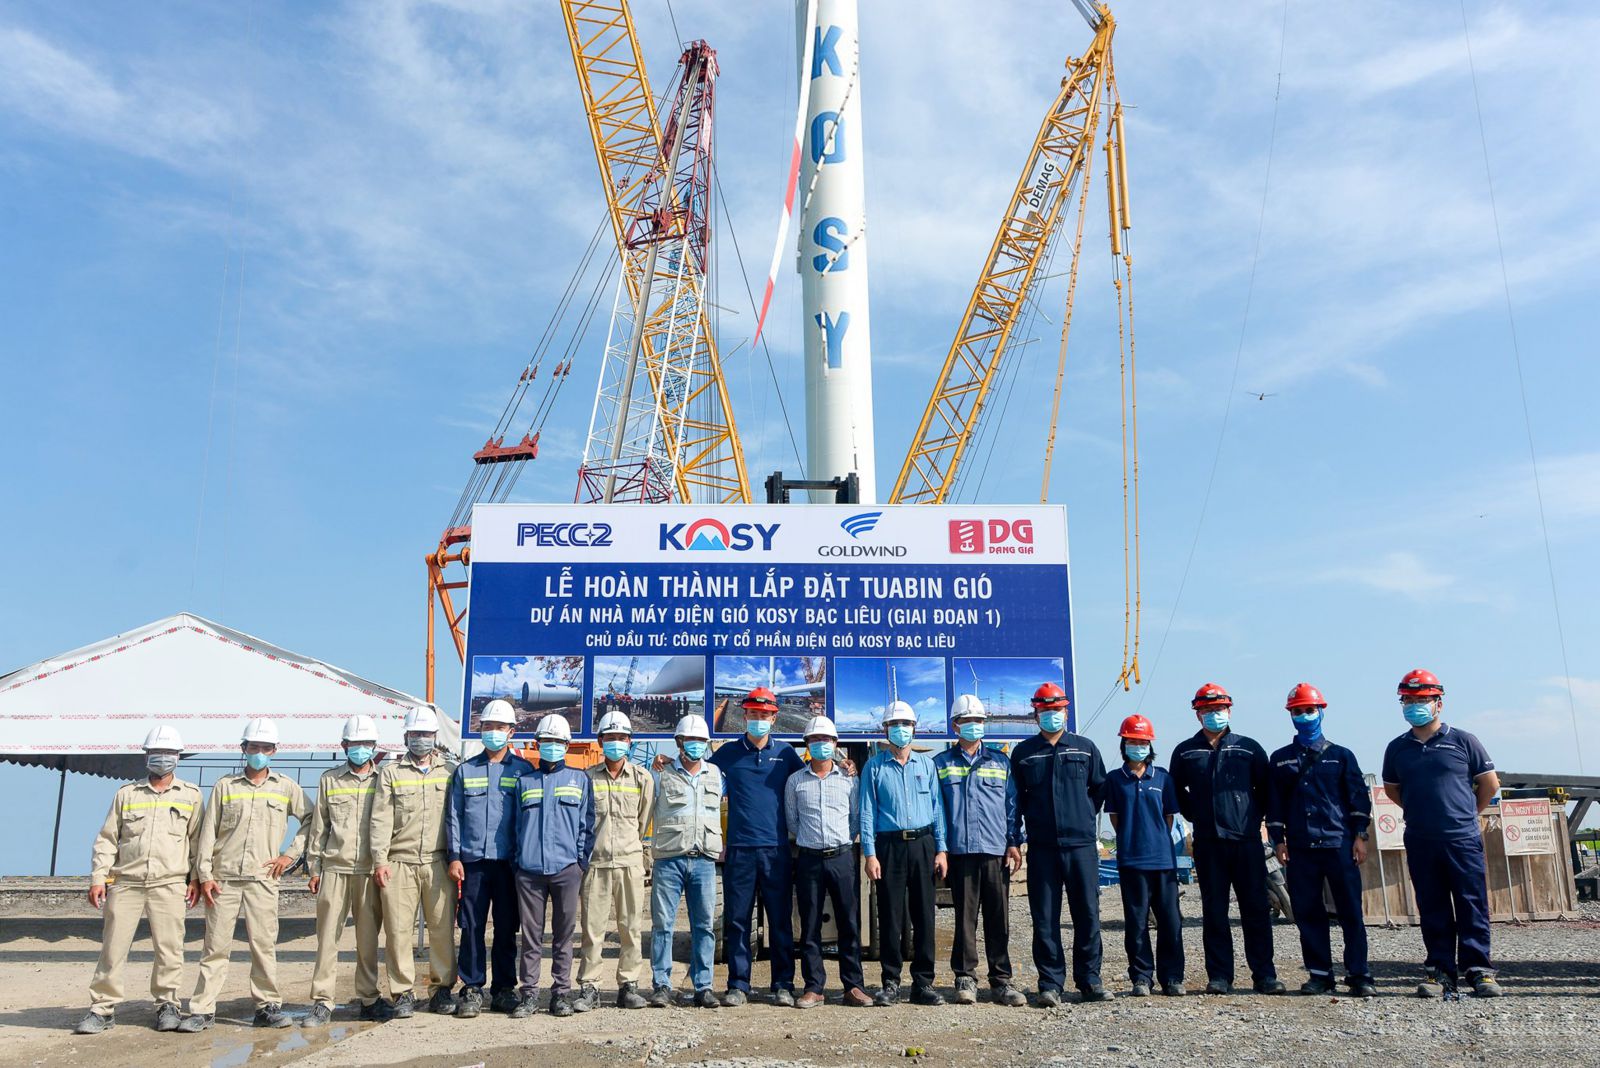 Đại diện chủ đầu tư dự án và các nhà thầu trong lễ hoàn thành lắp đặt turbinep/gió nhà máy Điện gió Kosy Bạc Liêu.